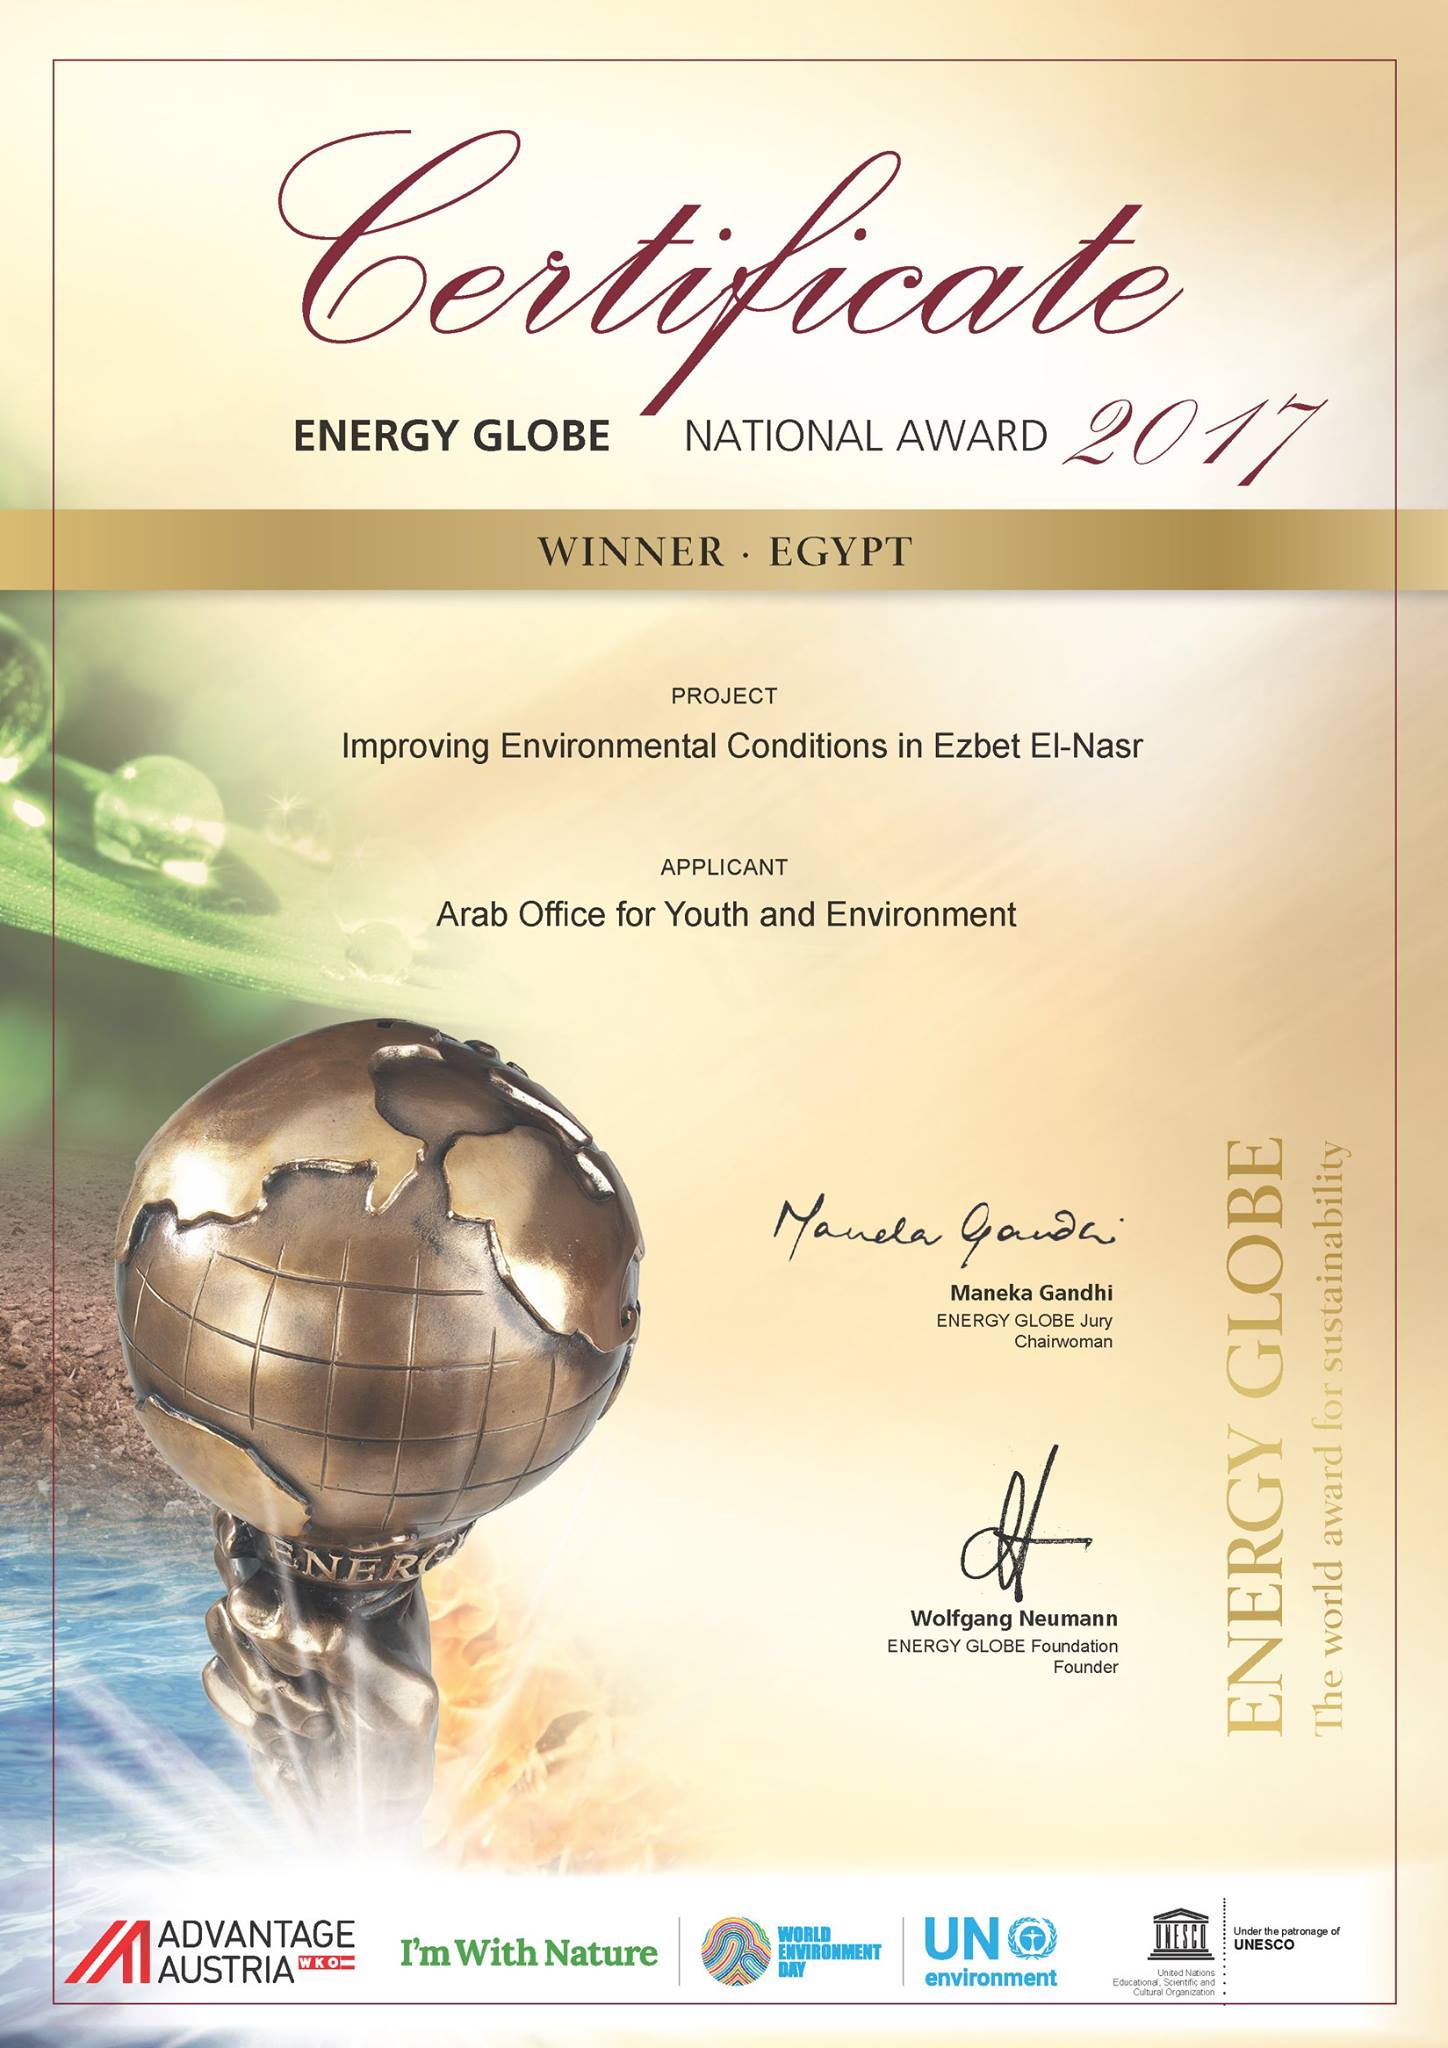 المكتب العربي للشباب والبيئة يفوز بالجائزة الوطنية للطاقة